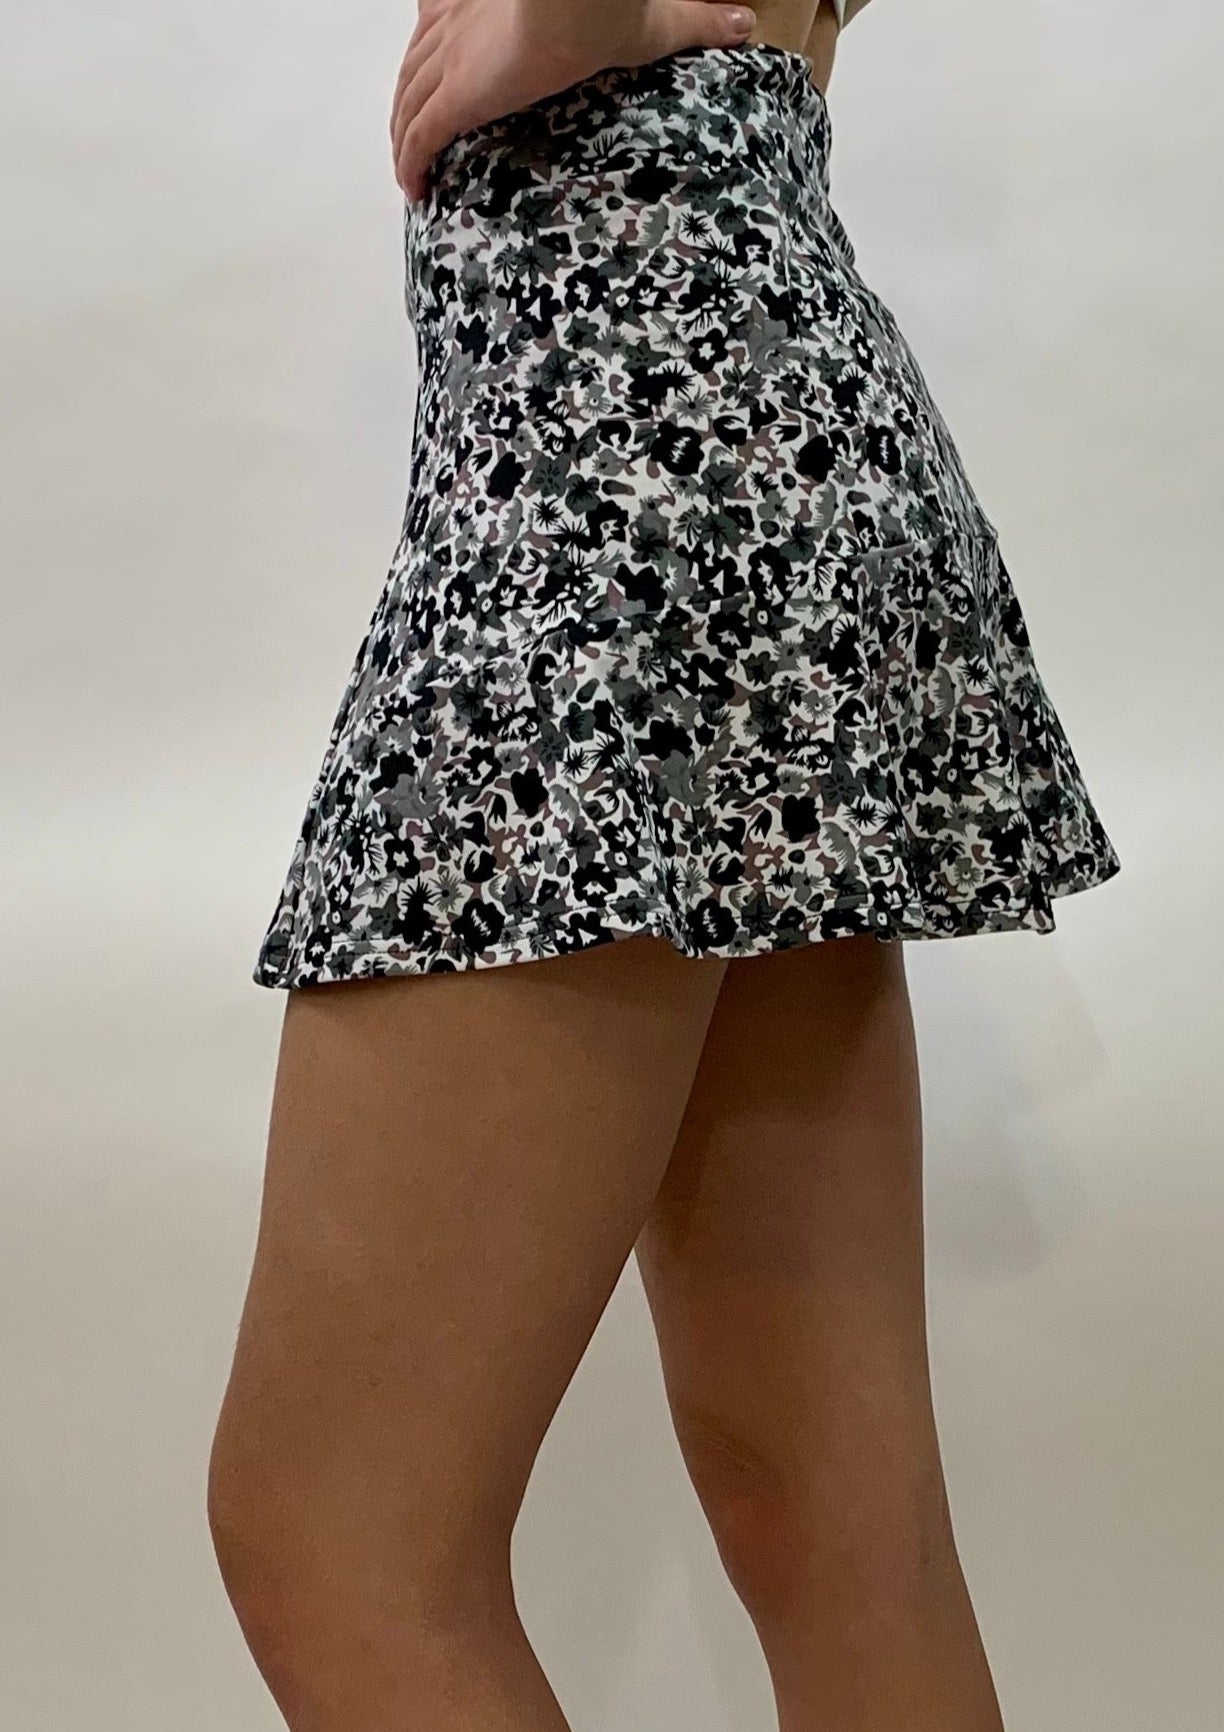 PETUNIA - Half Ruffle Skirt - Black and Gray